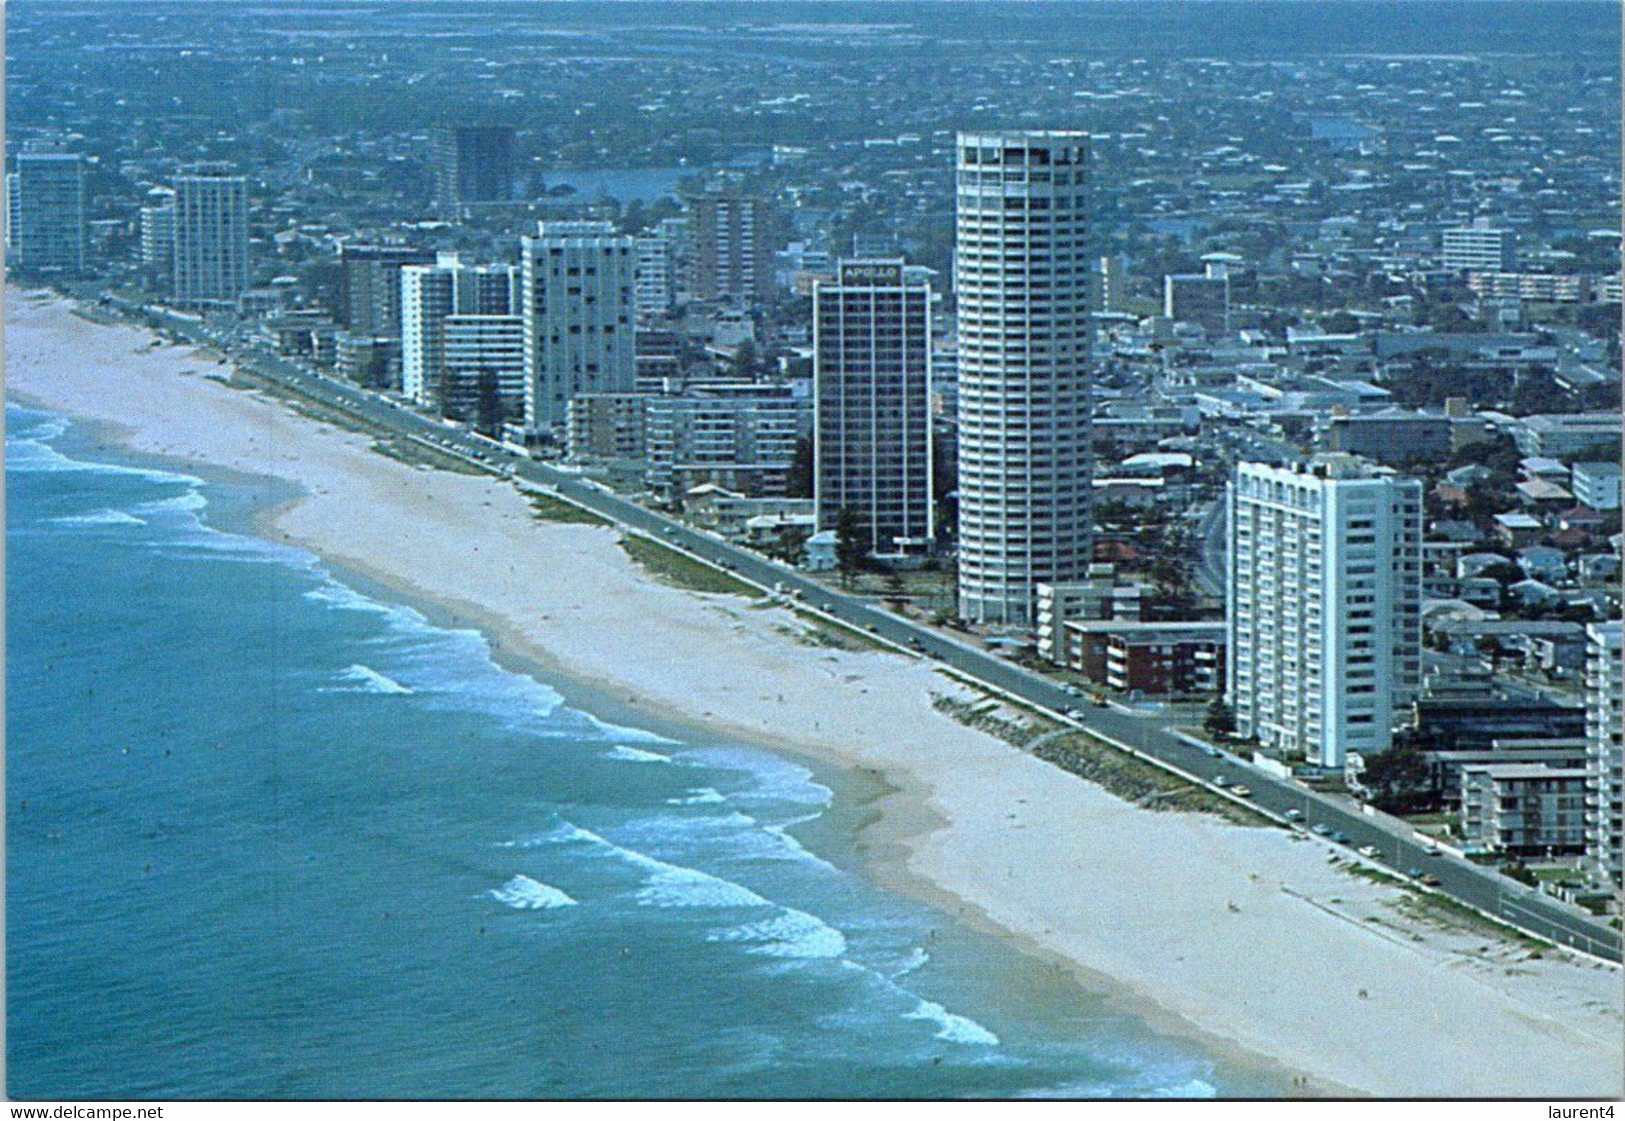 (5 H 51) Australia Post Pre-Paid 18 Cent Postcards - 2 Postcards - Queensland - (Surfer's Paradise) - Gold Coast